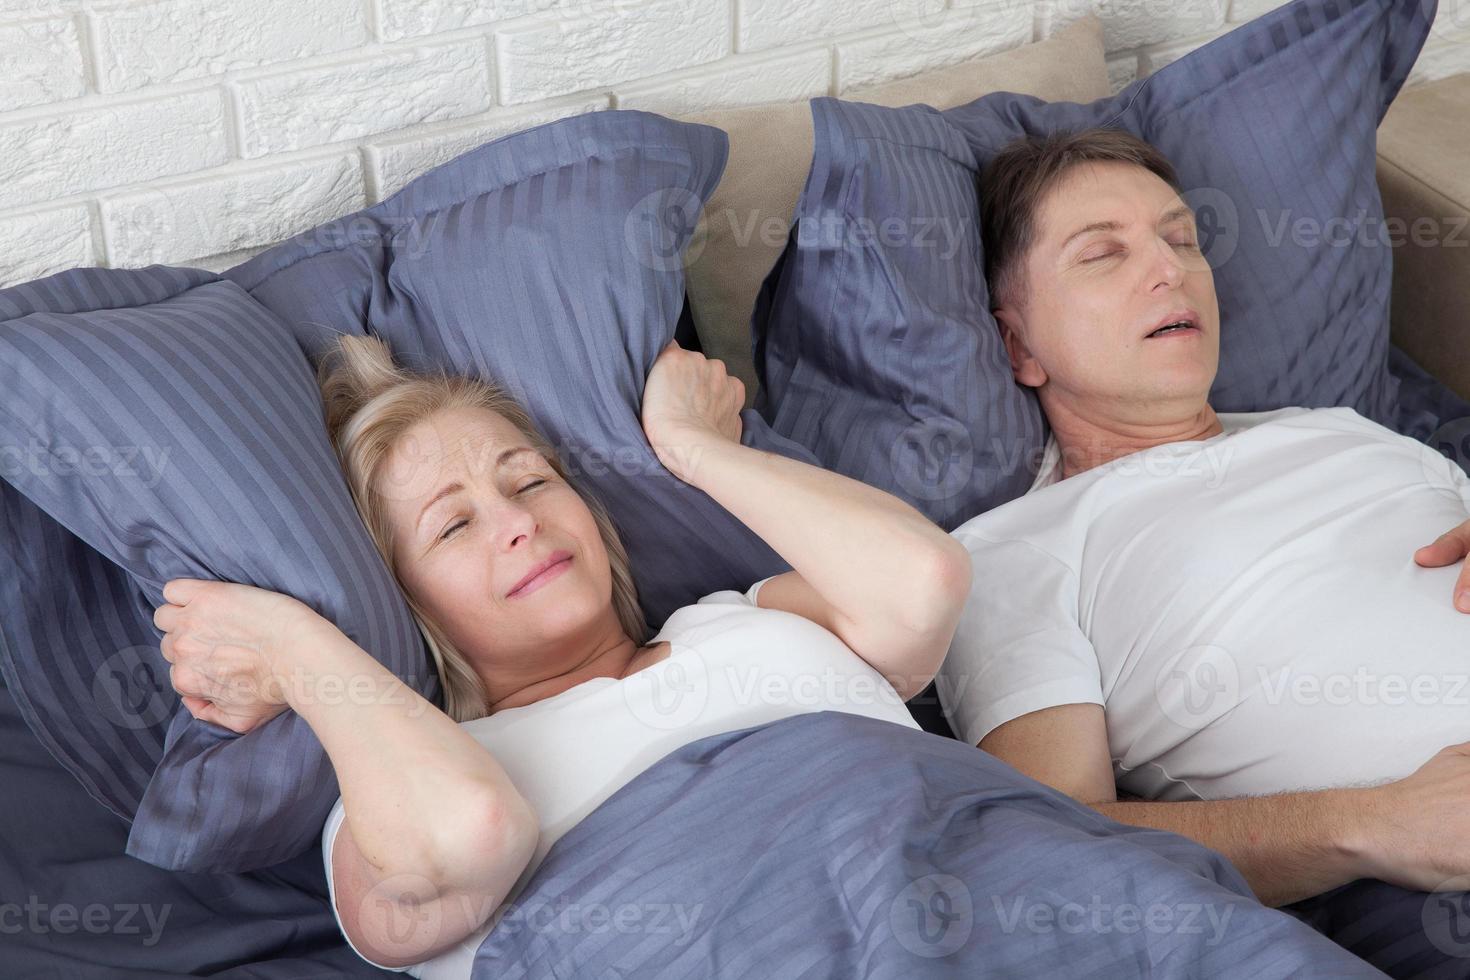 homem roncando. casal na cama, homem roncando e mulher não consegue dormir, cobrindo os ouvidos com travesseiro para o barulho do ronco. casal de meia-idade na cama em casa. foto